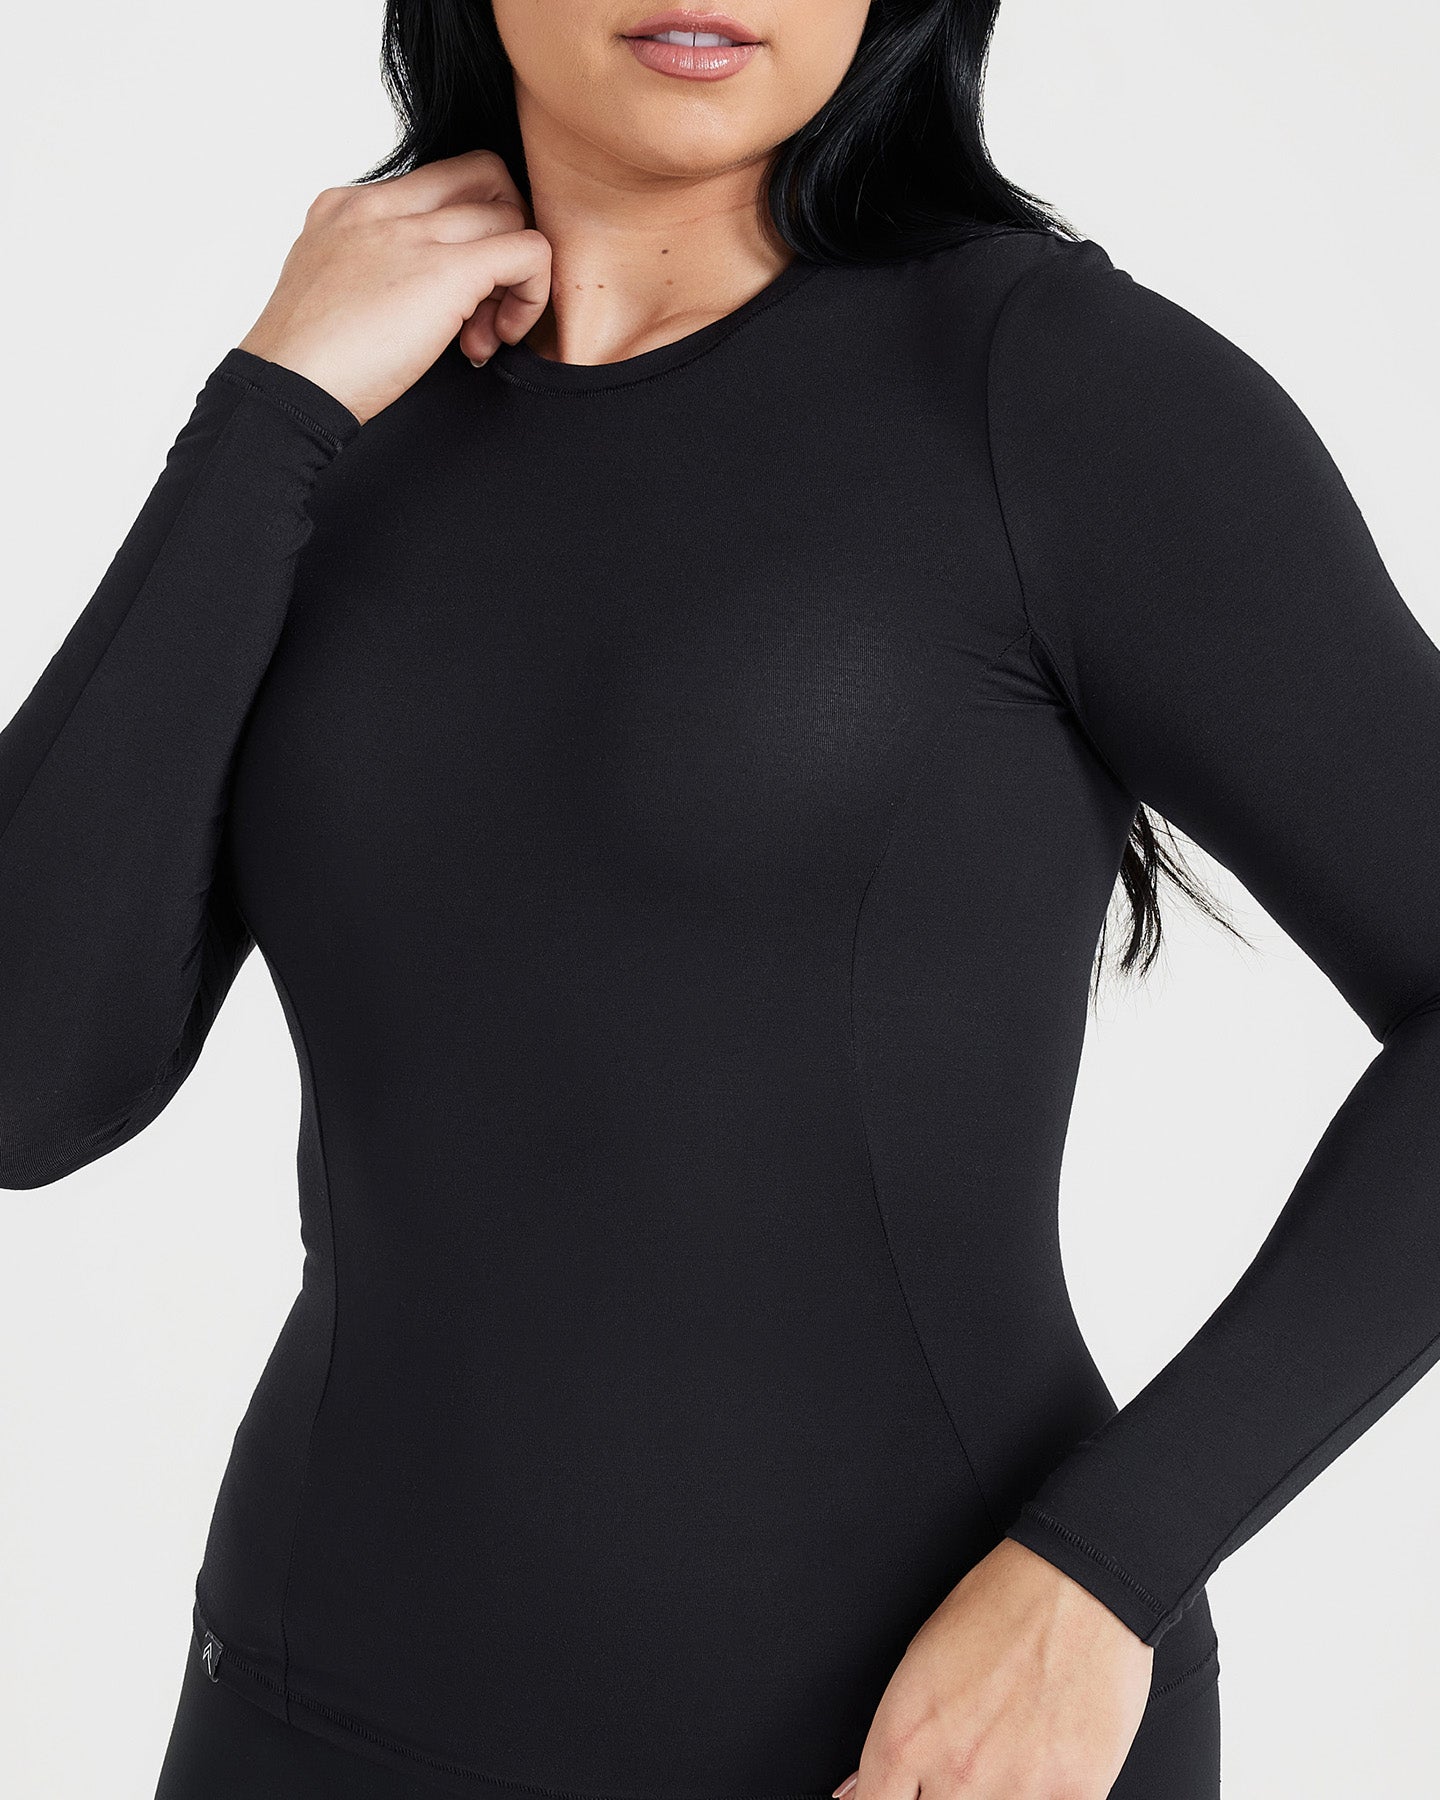 Women's Black Long Sleeve Top - Slim Fit